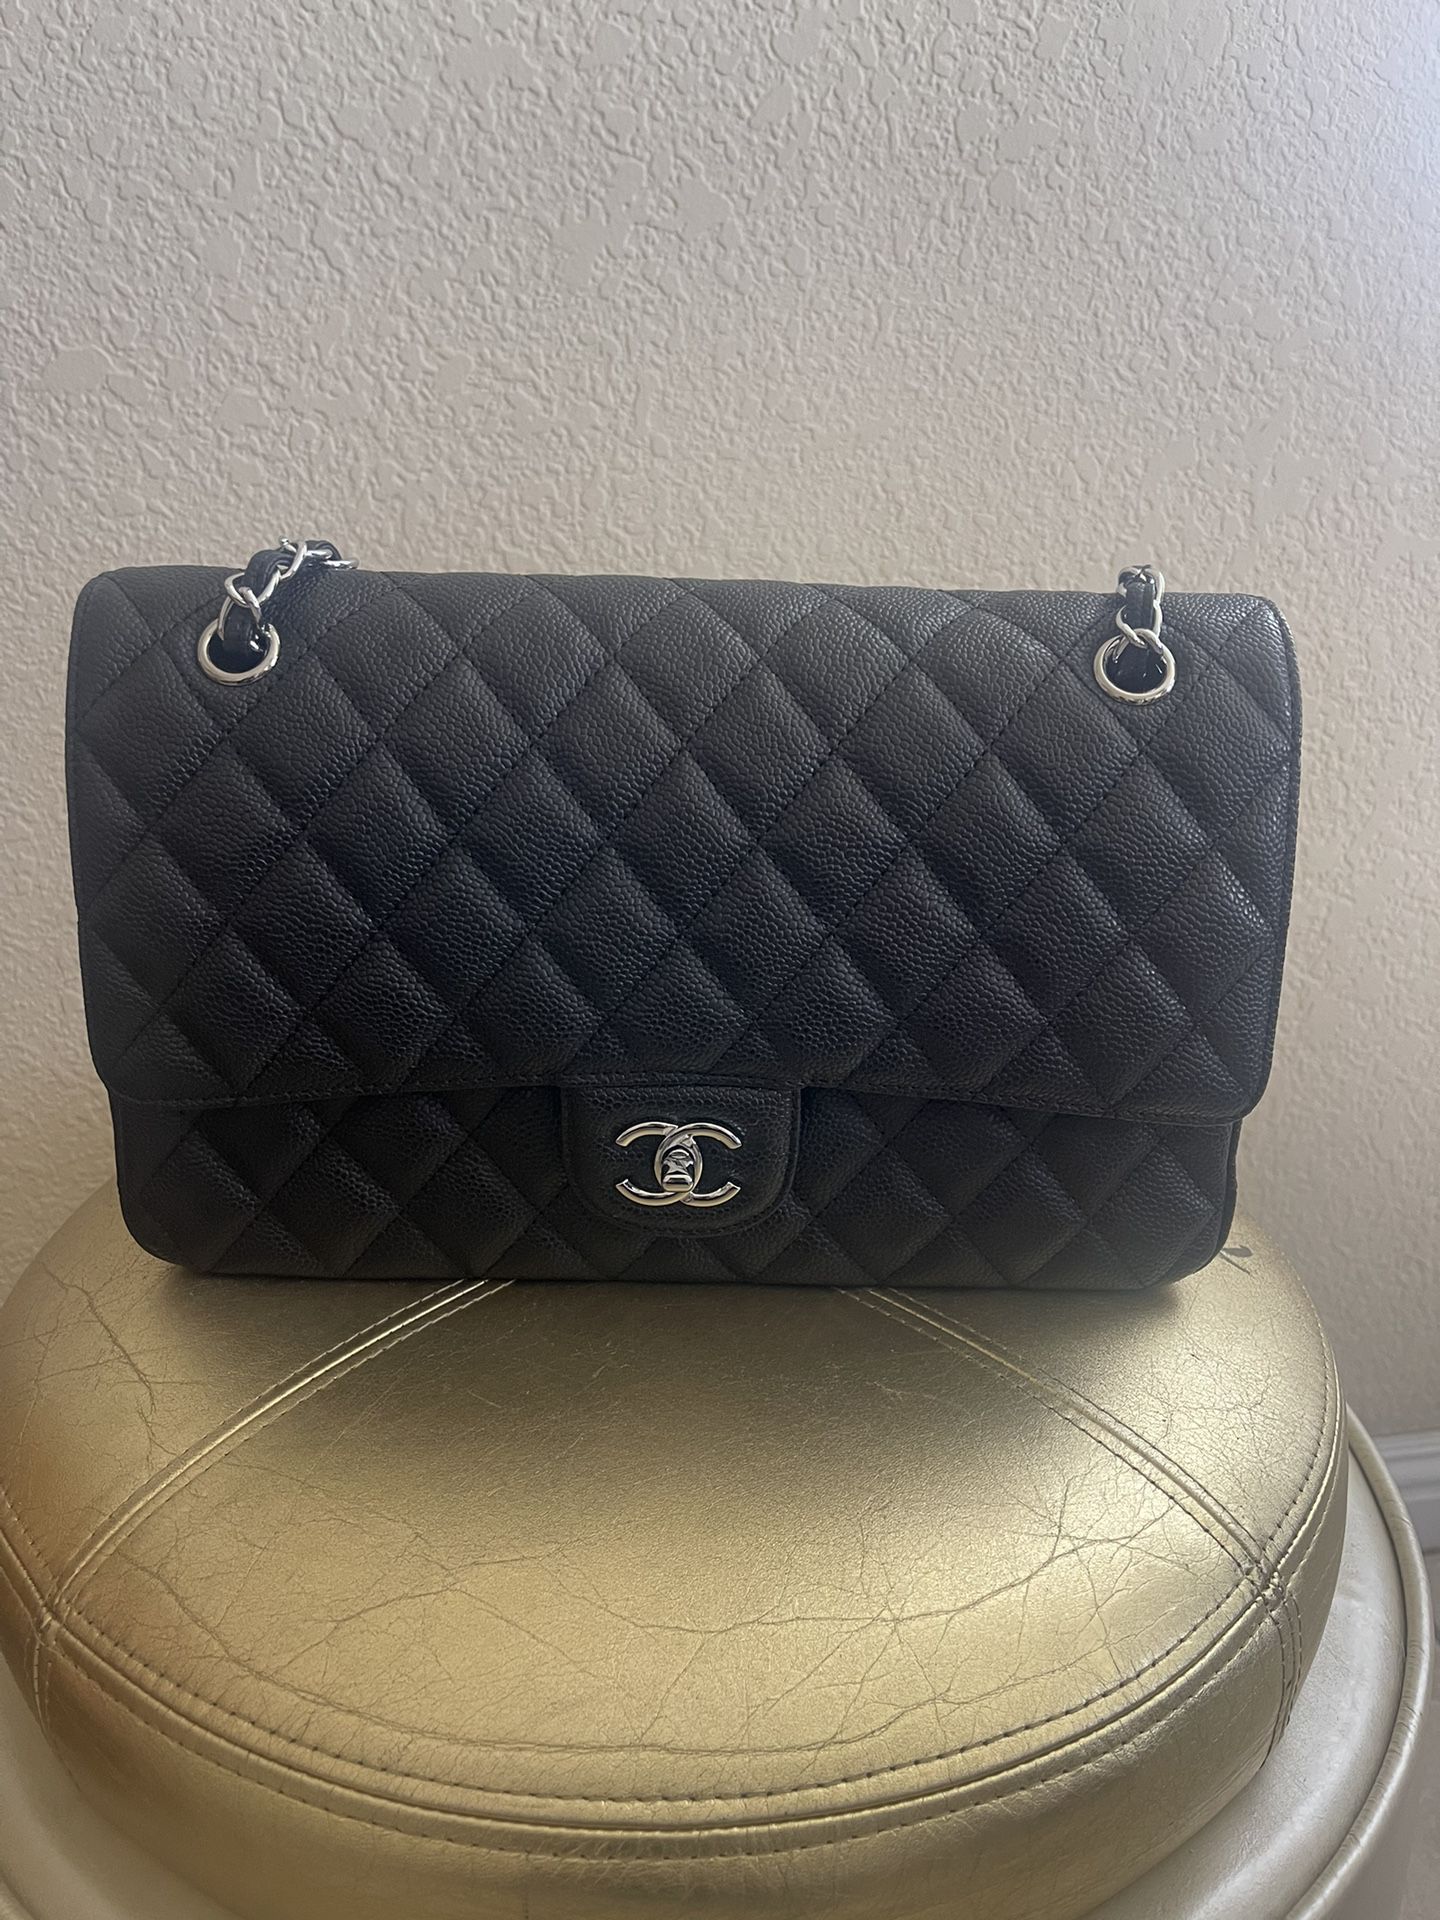 Chanel bag 